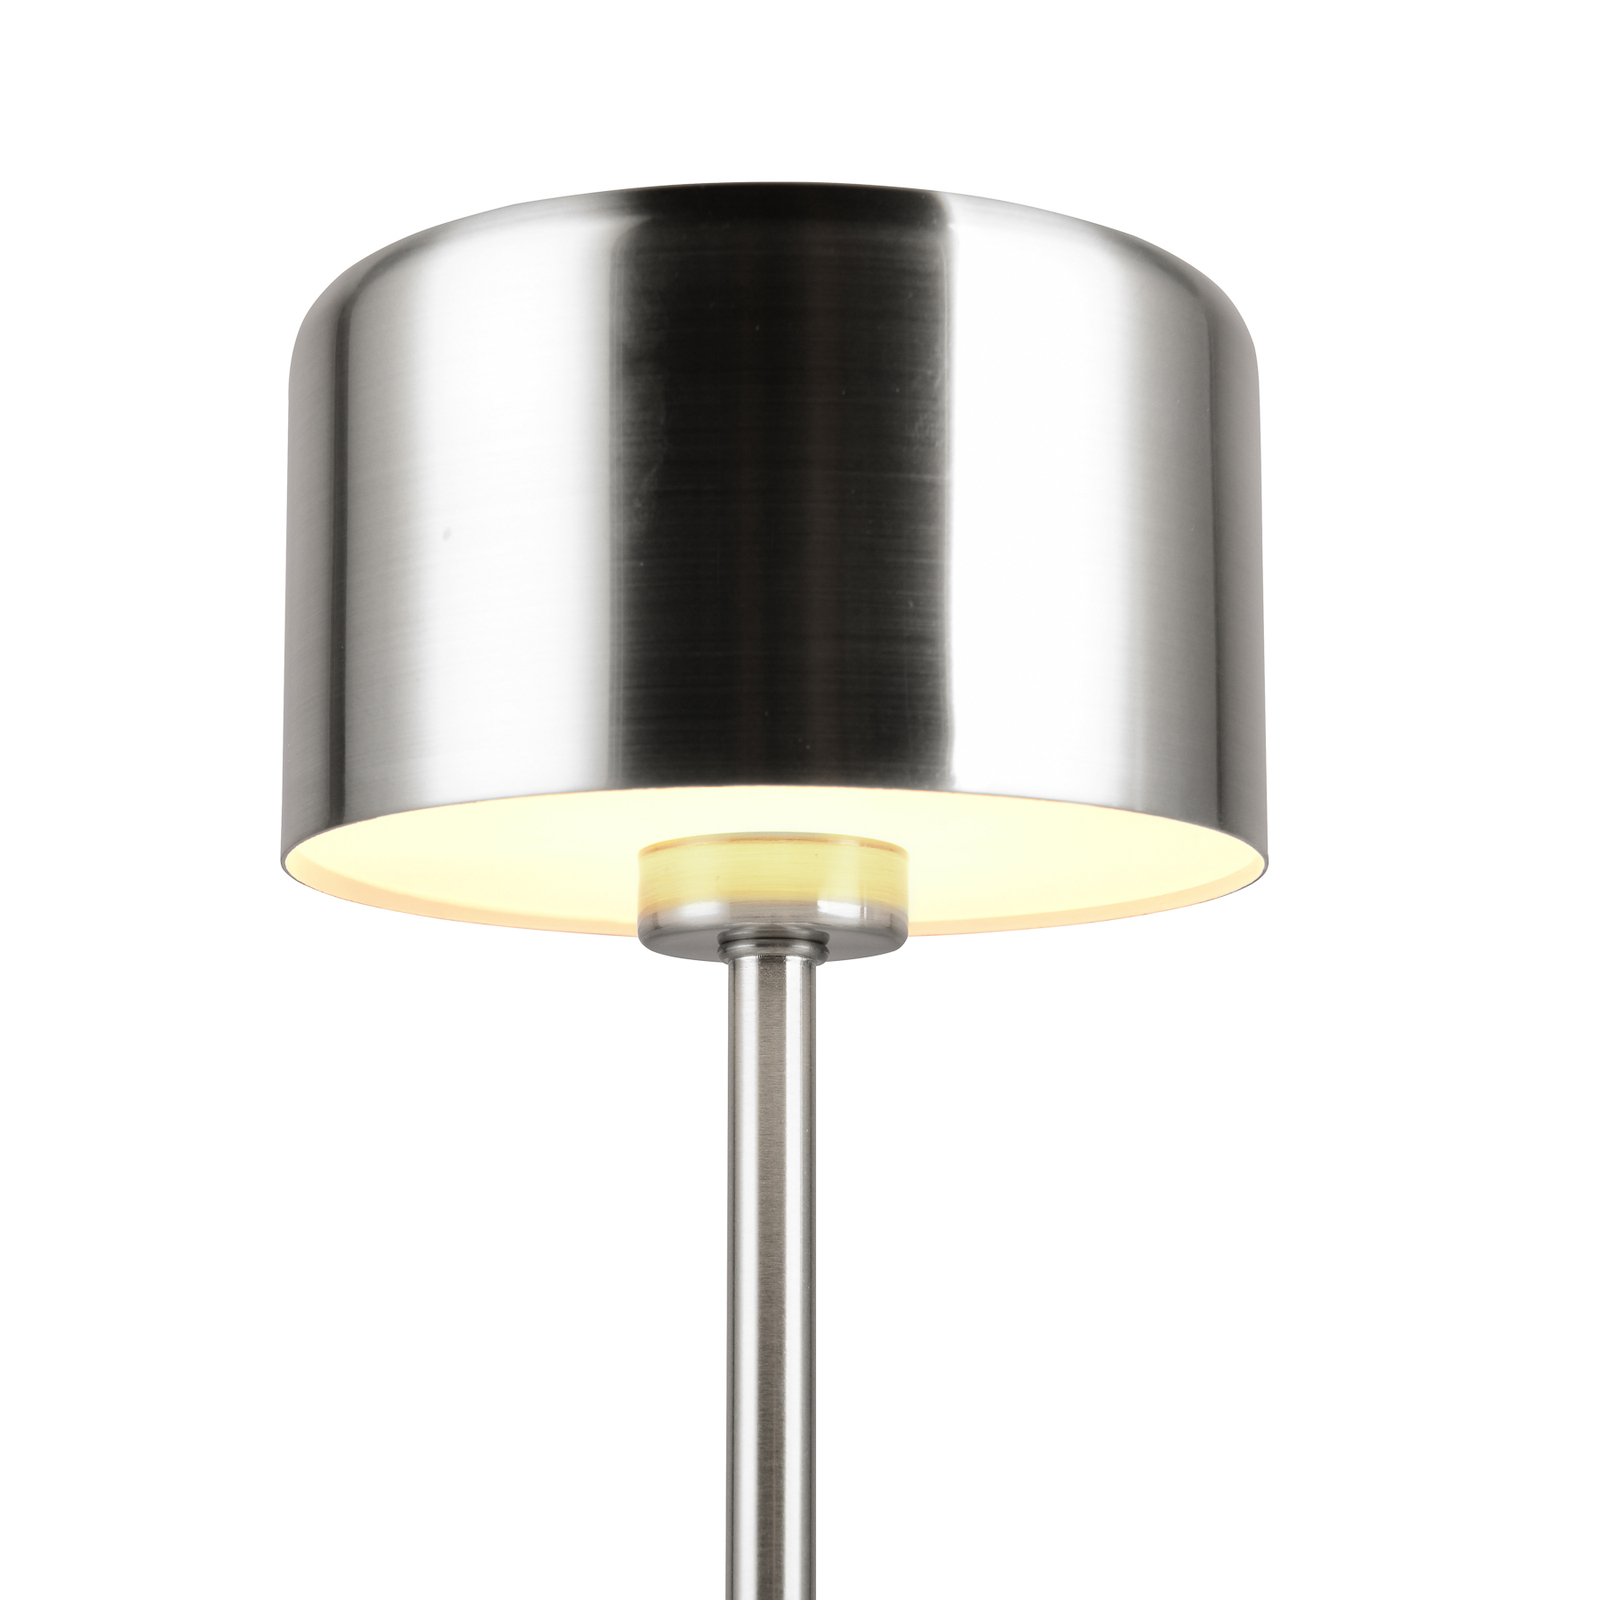 Jeff LED tafellamp, nikkelkleurig, hoogte 30 cm, metaal